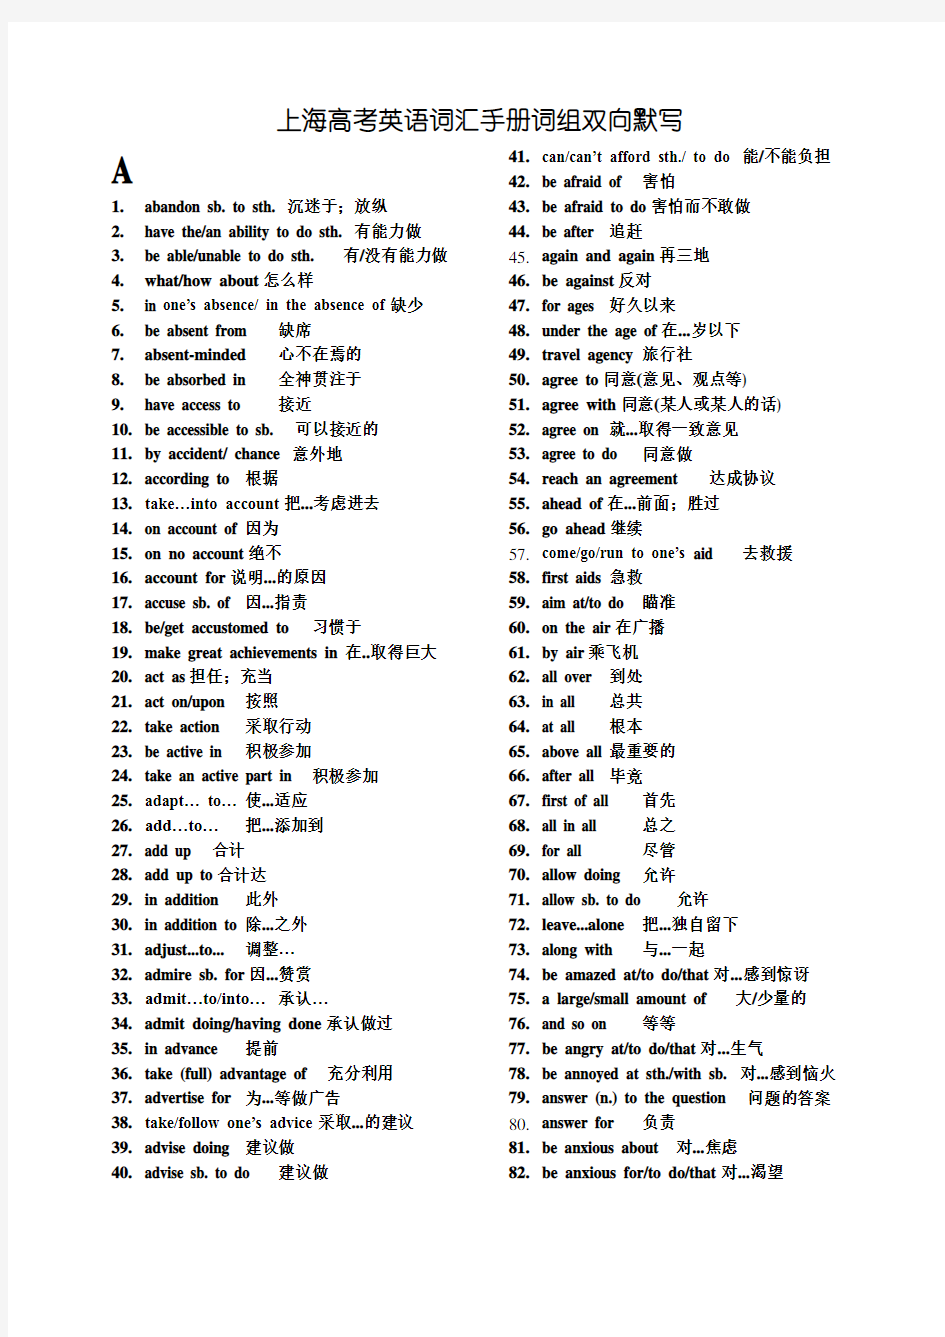 上海高考英语词汇手册配套词组中英集合版